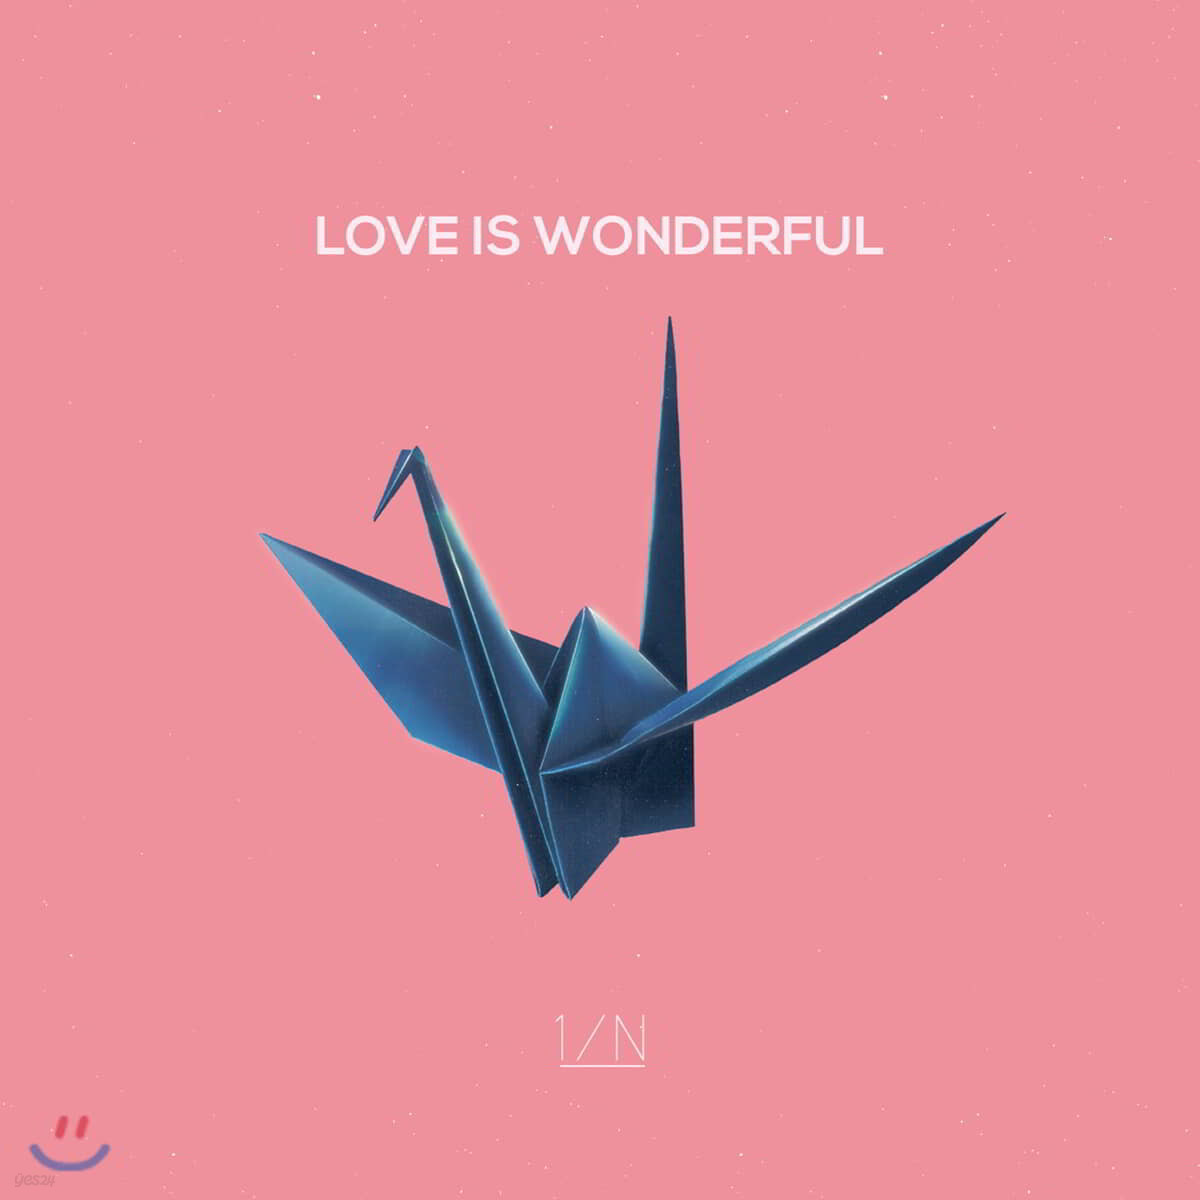 엔분의일(1/N) - LOVE IS WONDERFUL